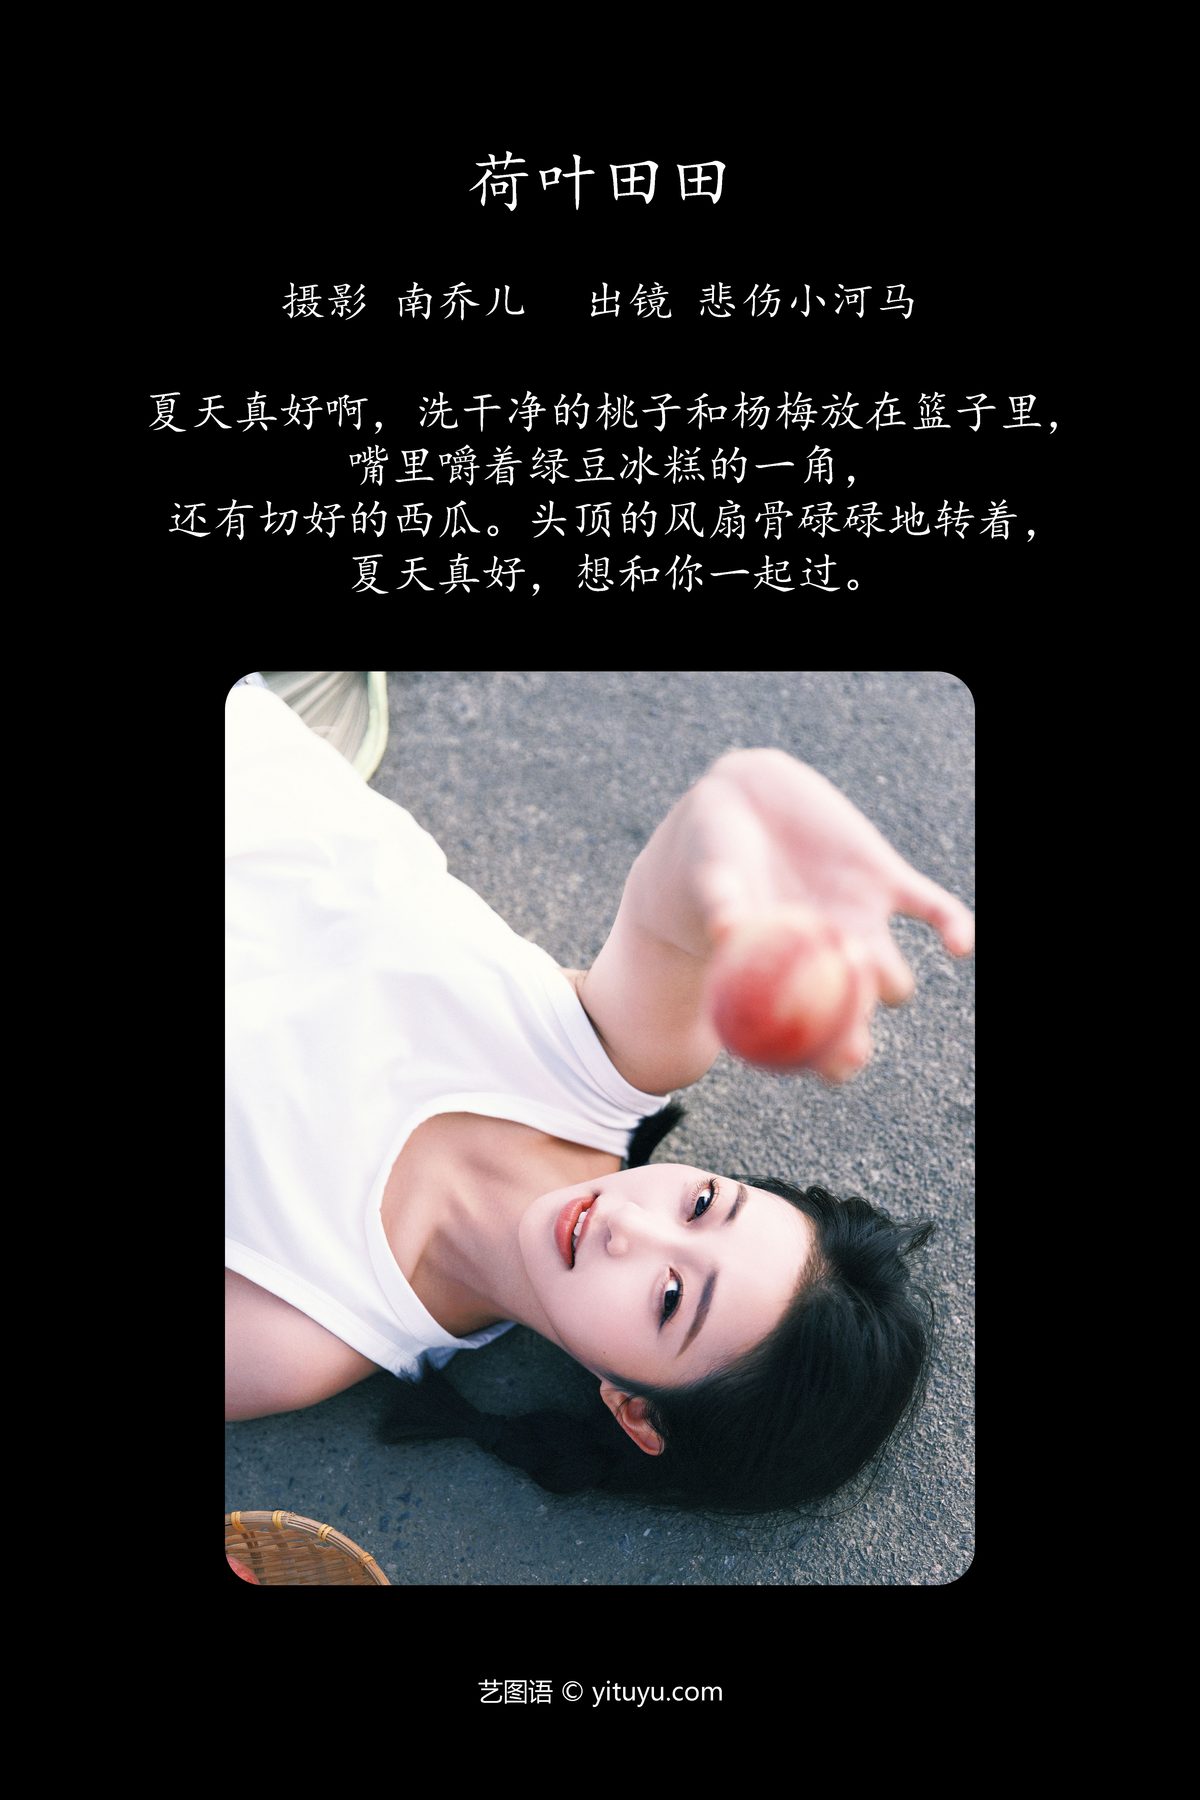 YiTuYu艺图语 Vol 4842 Bei Shang Xiao He Ma 0002 0133472559.jpg